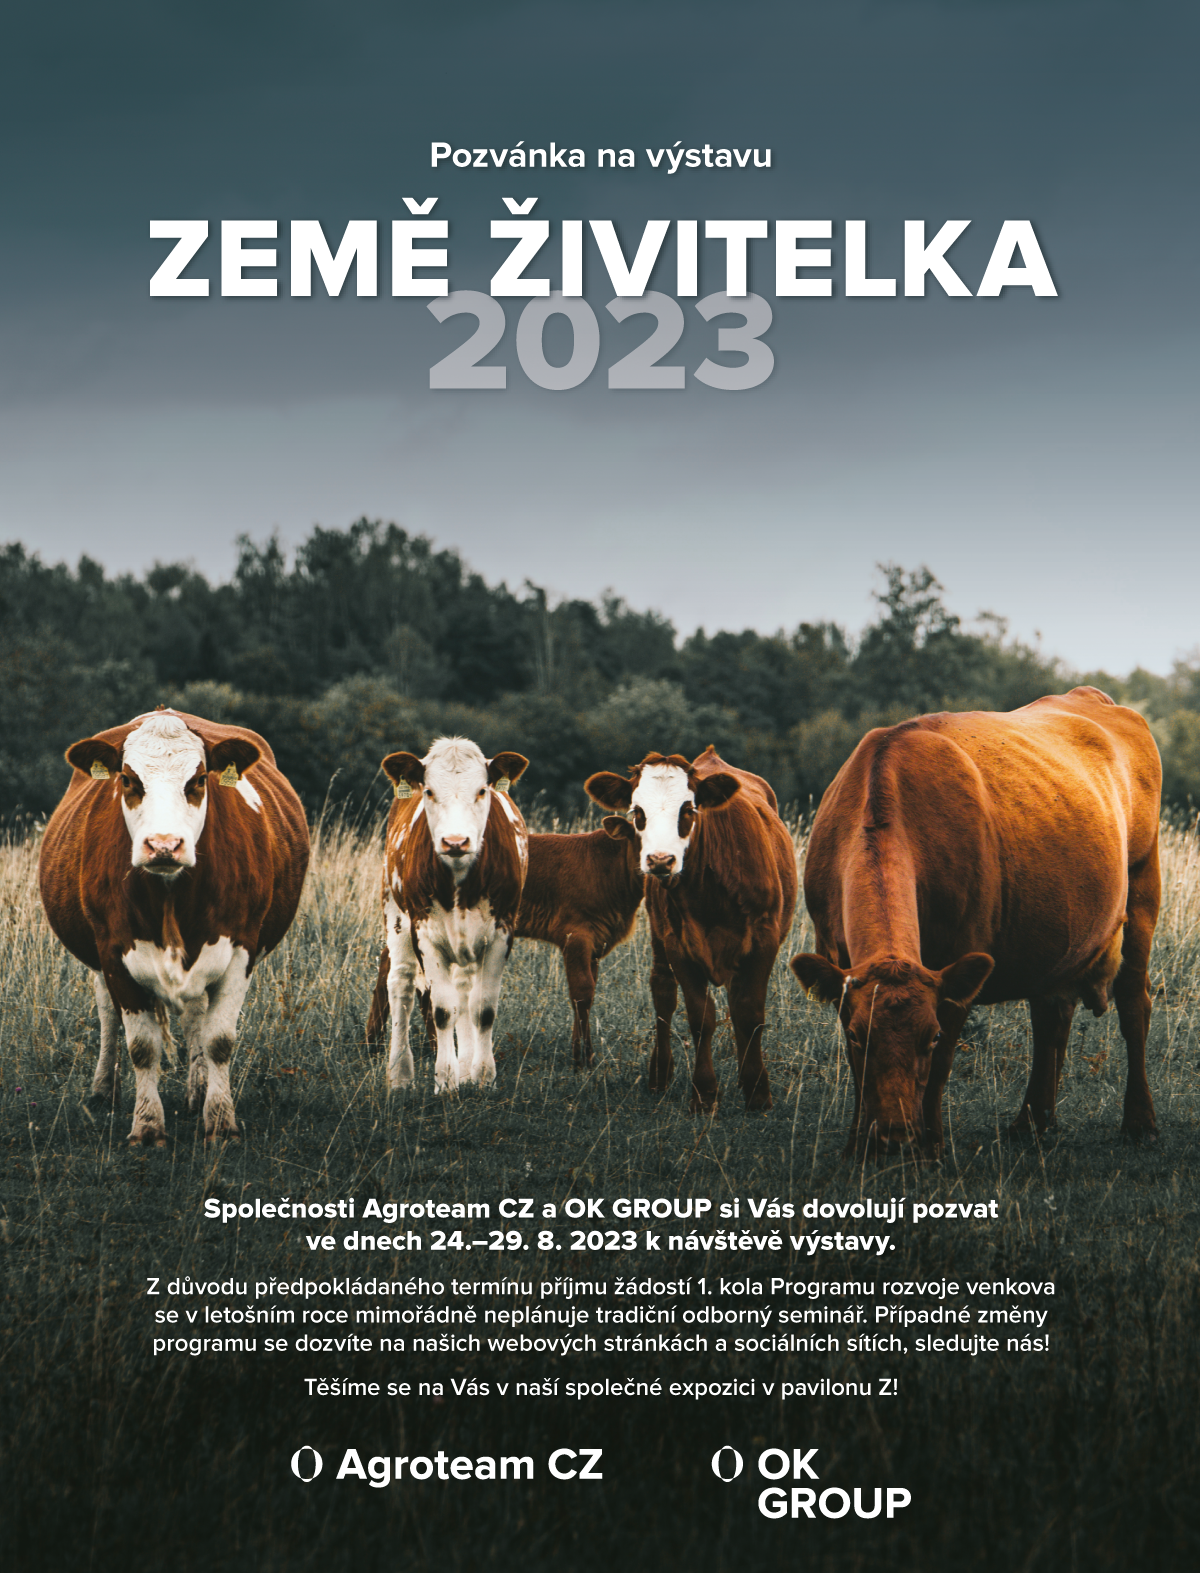 https://www.agroteam.cz/media/aktuality/obecne-aktuality/zeme-zivitelka-bulletin-2023-ln-bold.png